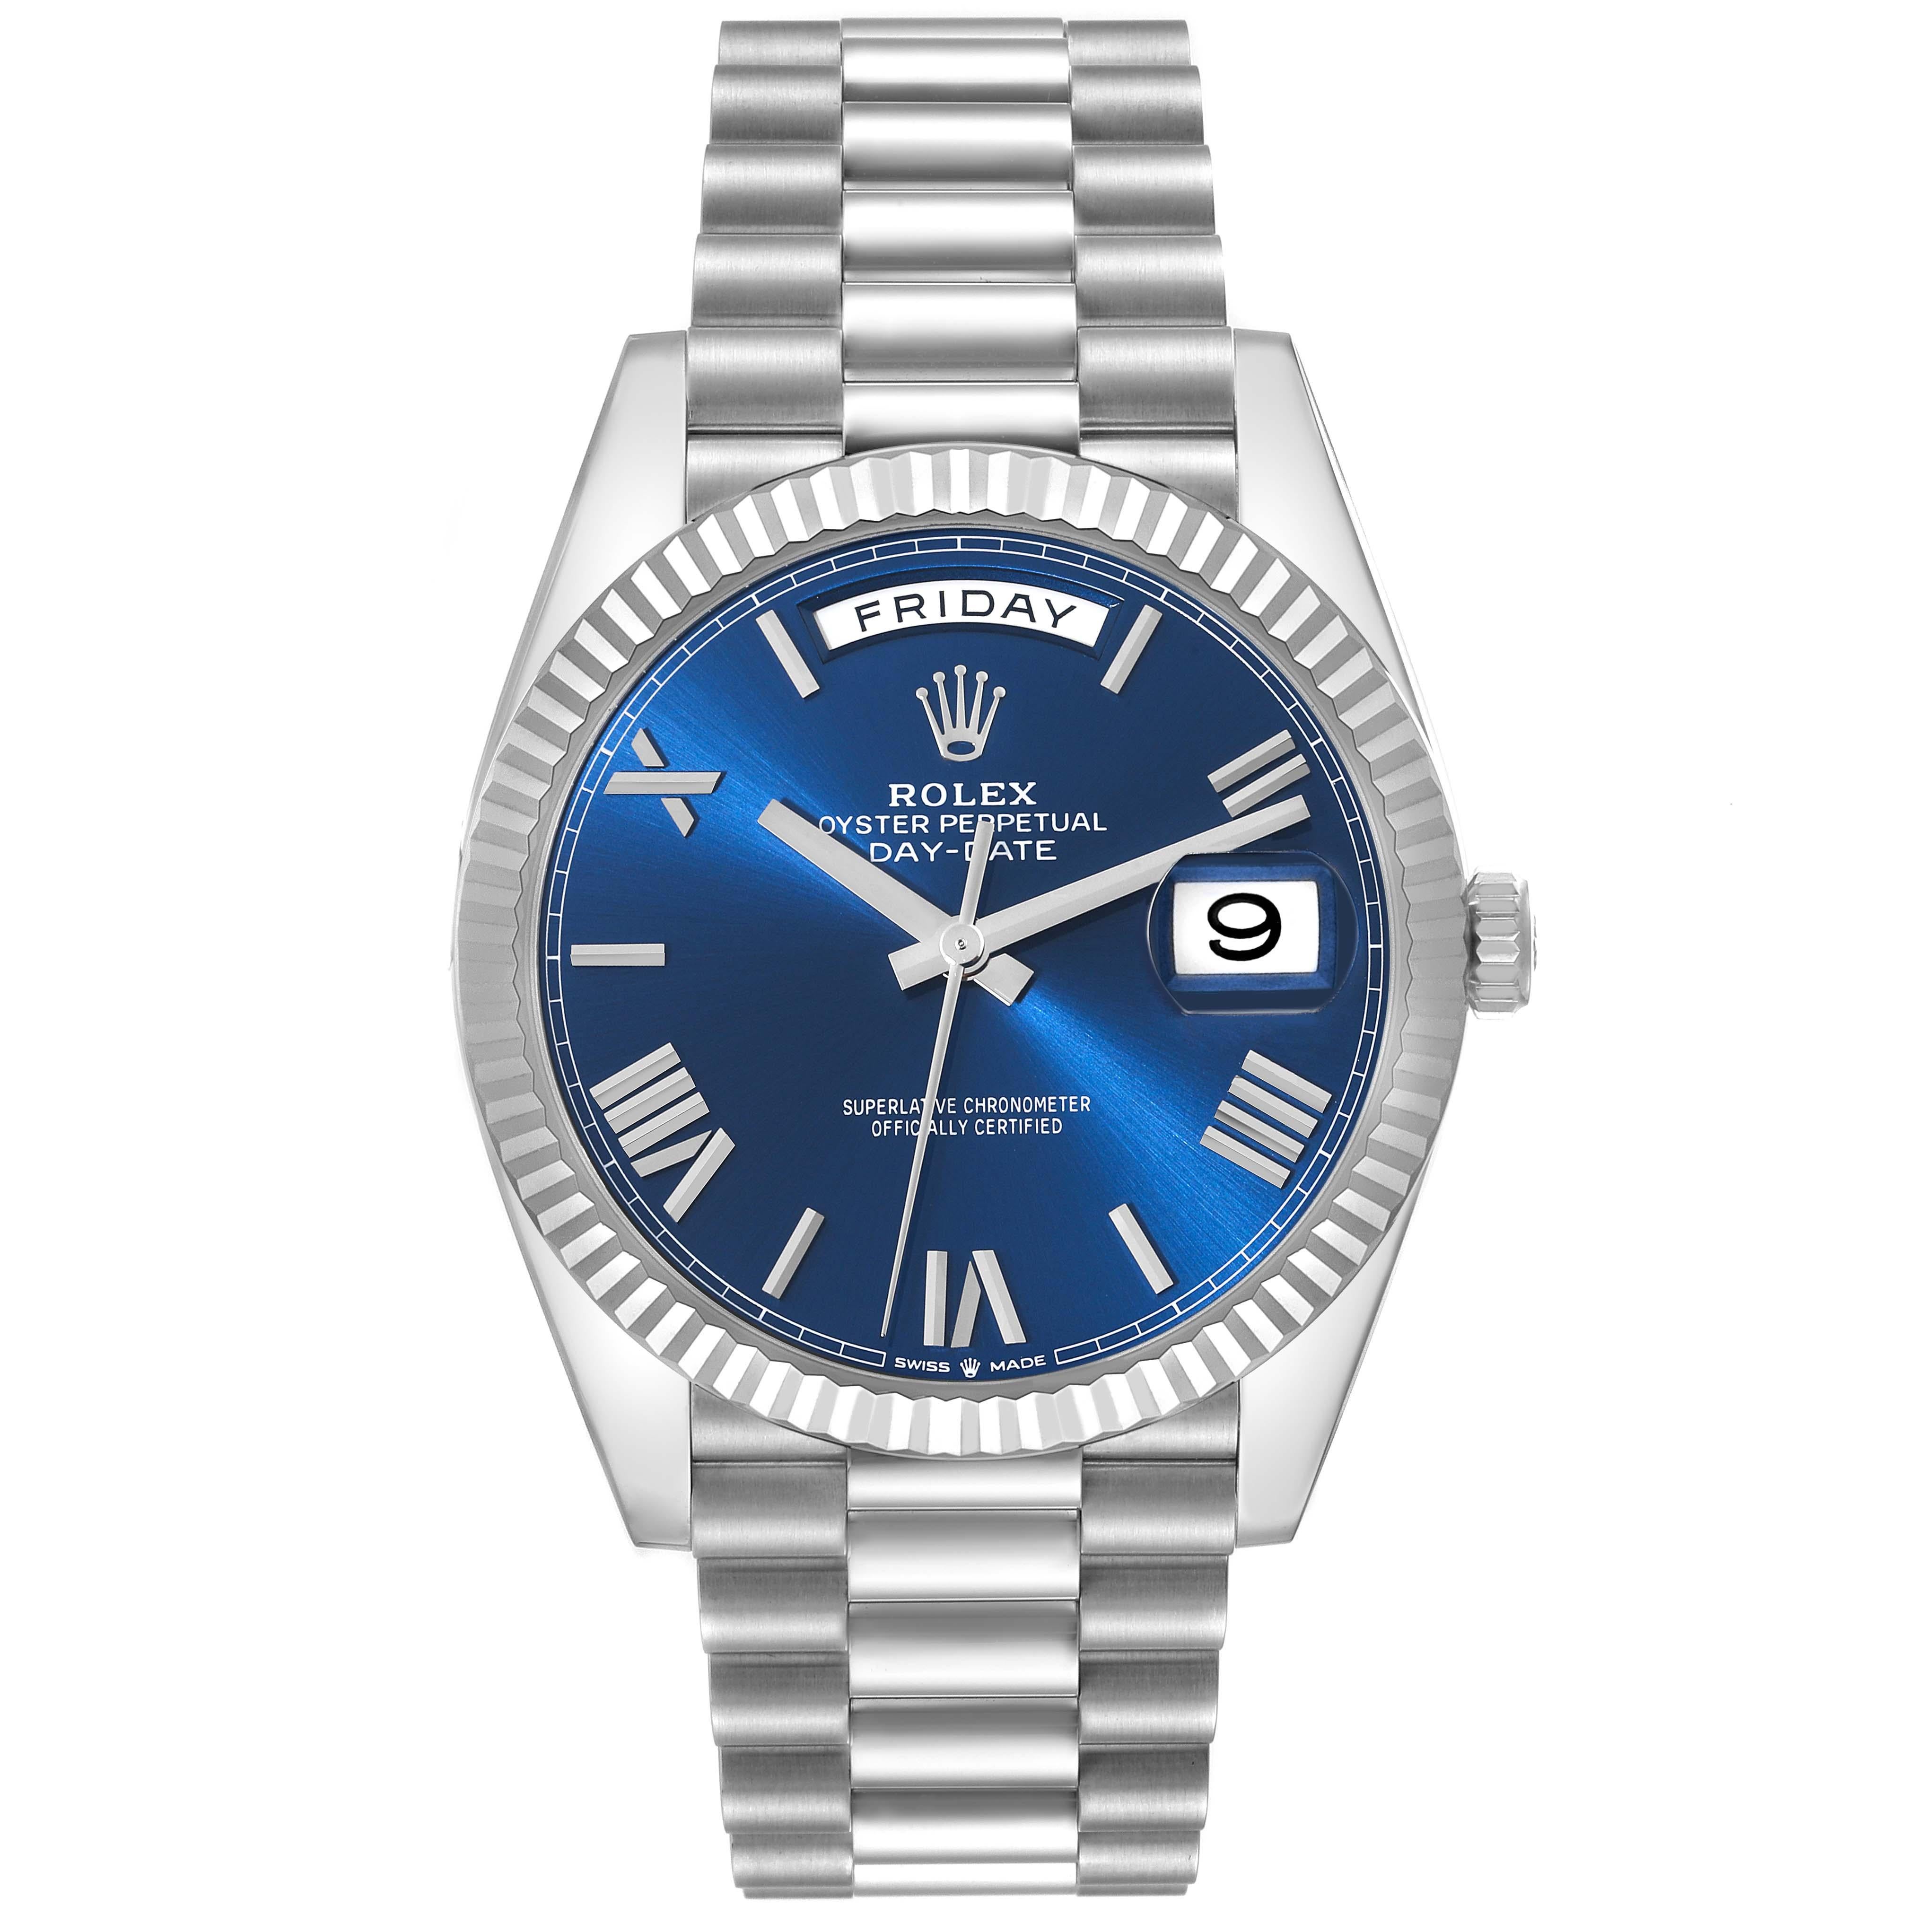 Rolex President Day-Date 40 Blue Dial Platinum Mens Watch 228236 Unworn. Mouvement à remontage automatique certifié officiellement chronomètre. Double fonction de réglage rapide. Boîtier oyster en platine de 40.0 mm de diamètre.  Logo Rolex sur une